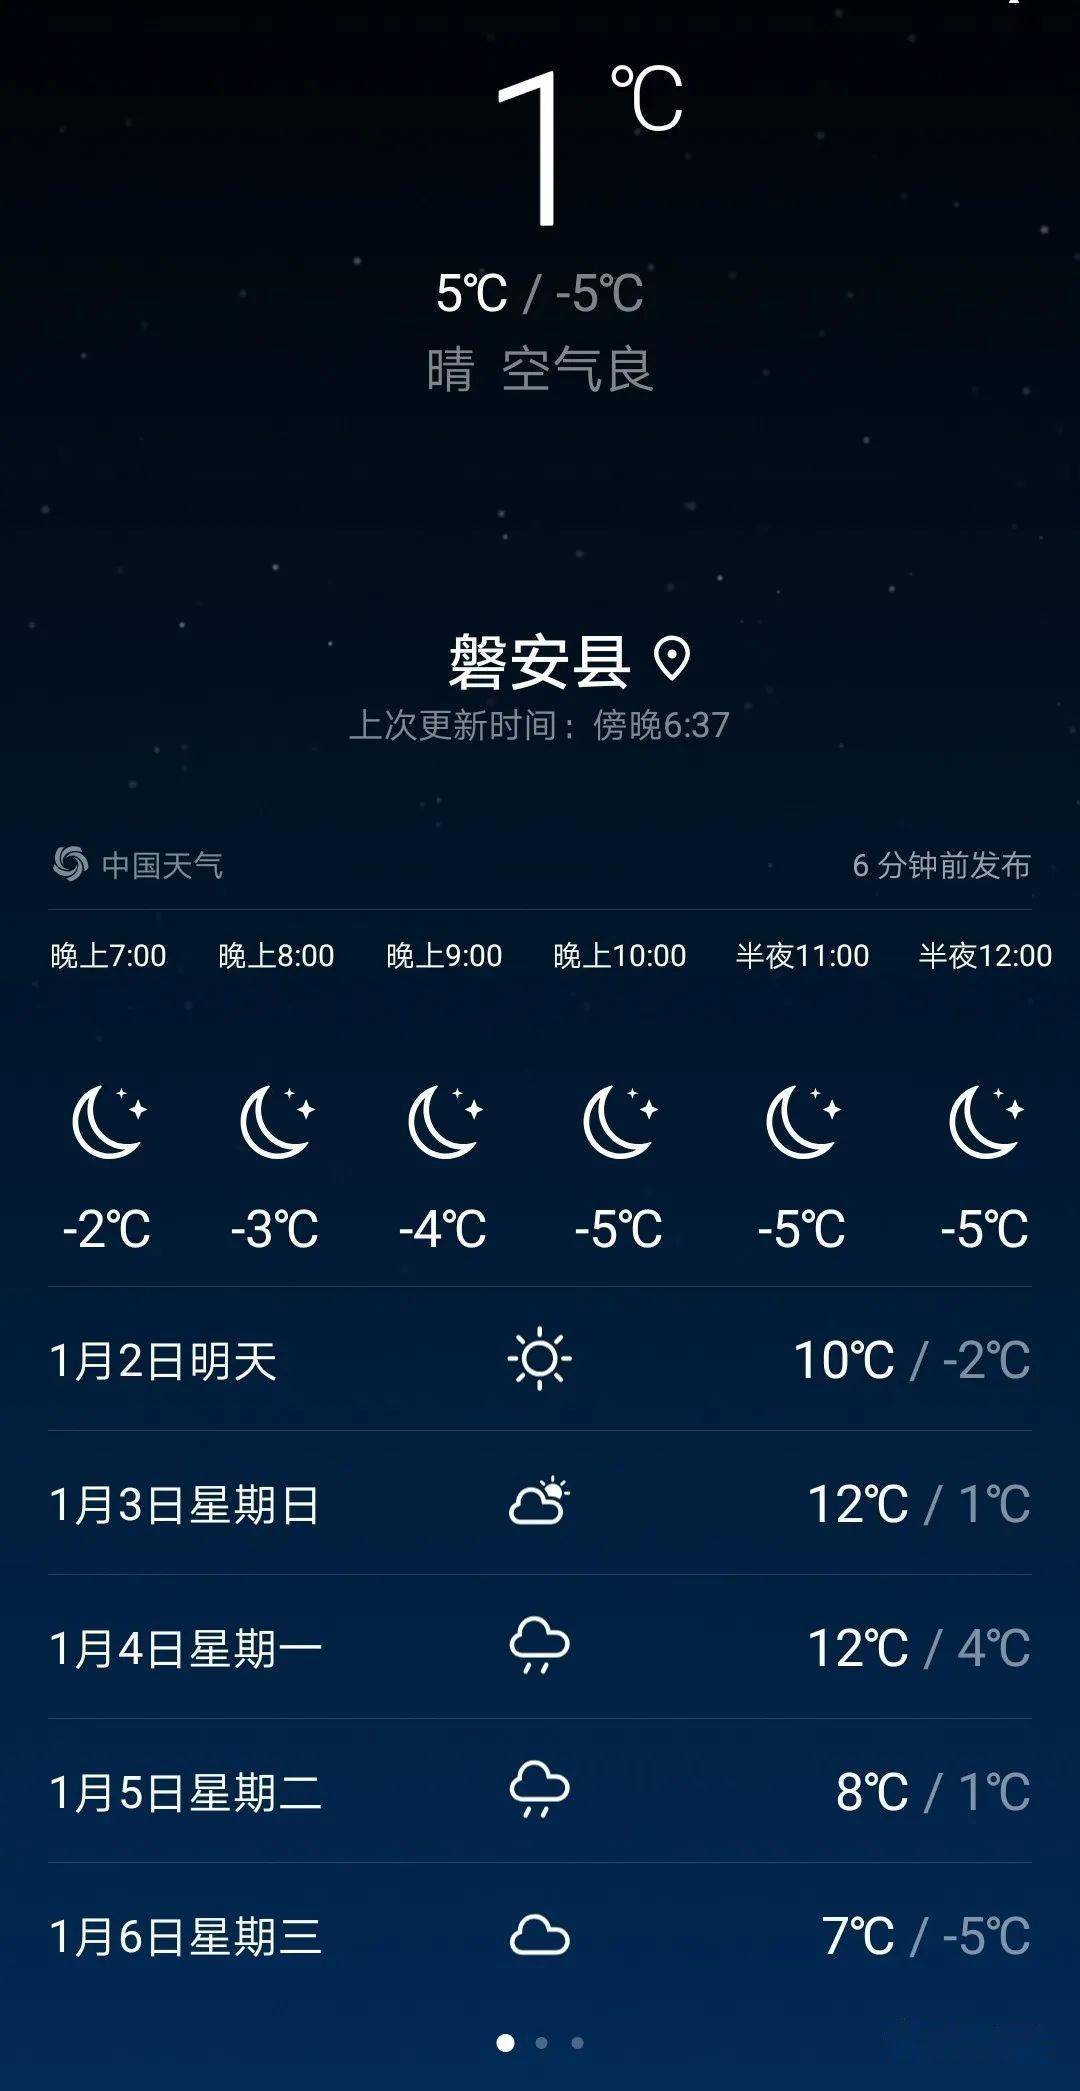 12月28日开始,磐安县遭遇极寒天气侵袭,气温剧降